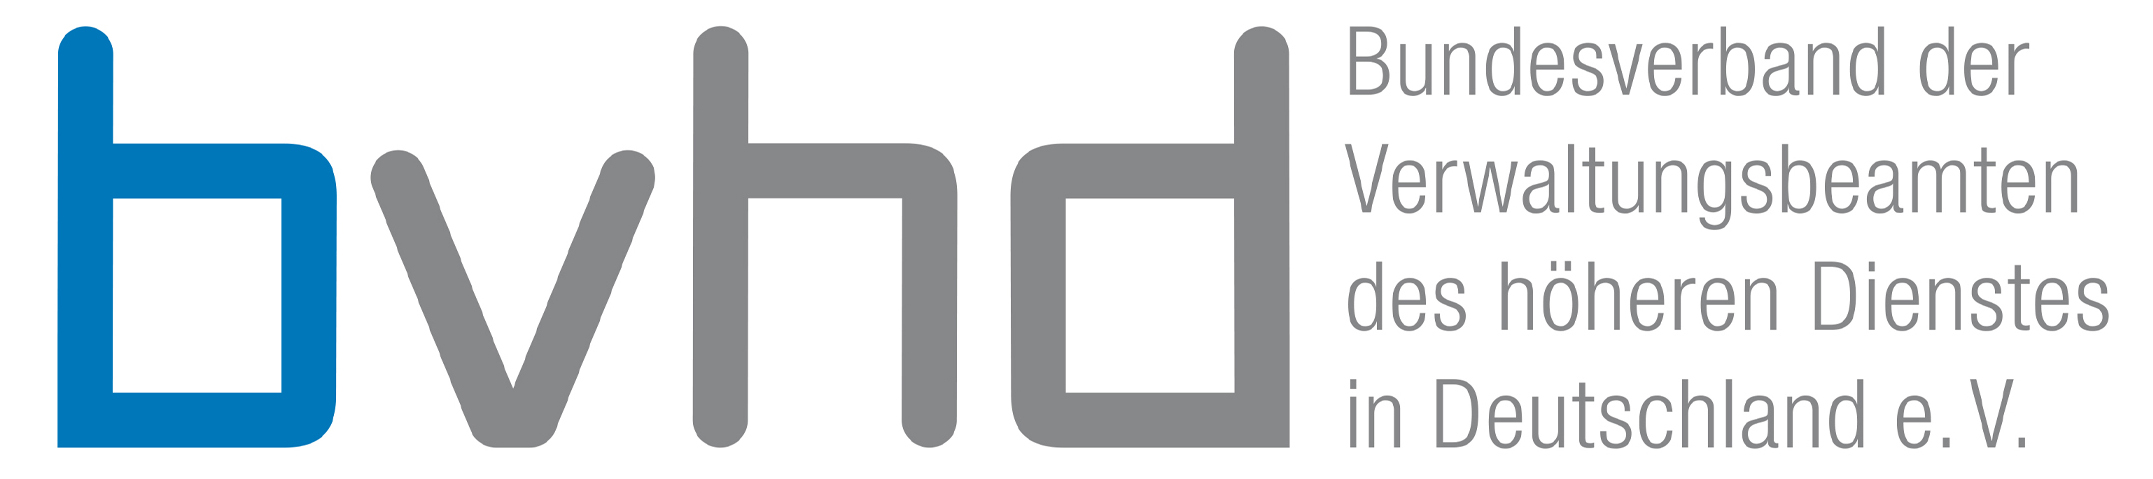 bvhd logo